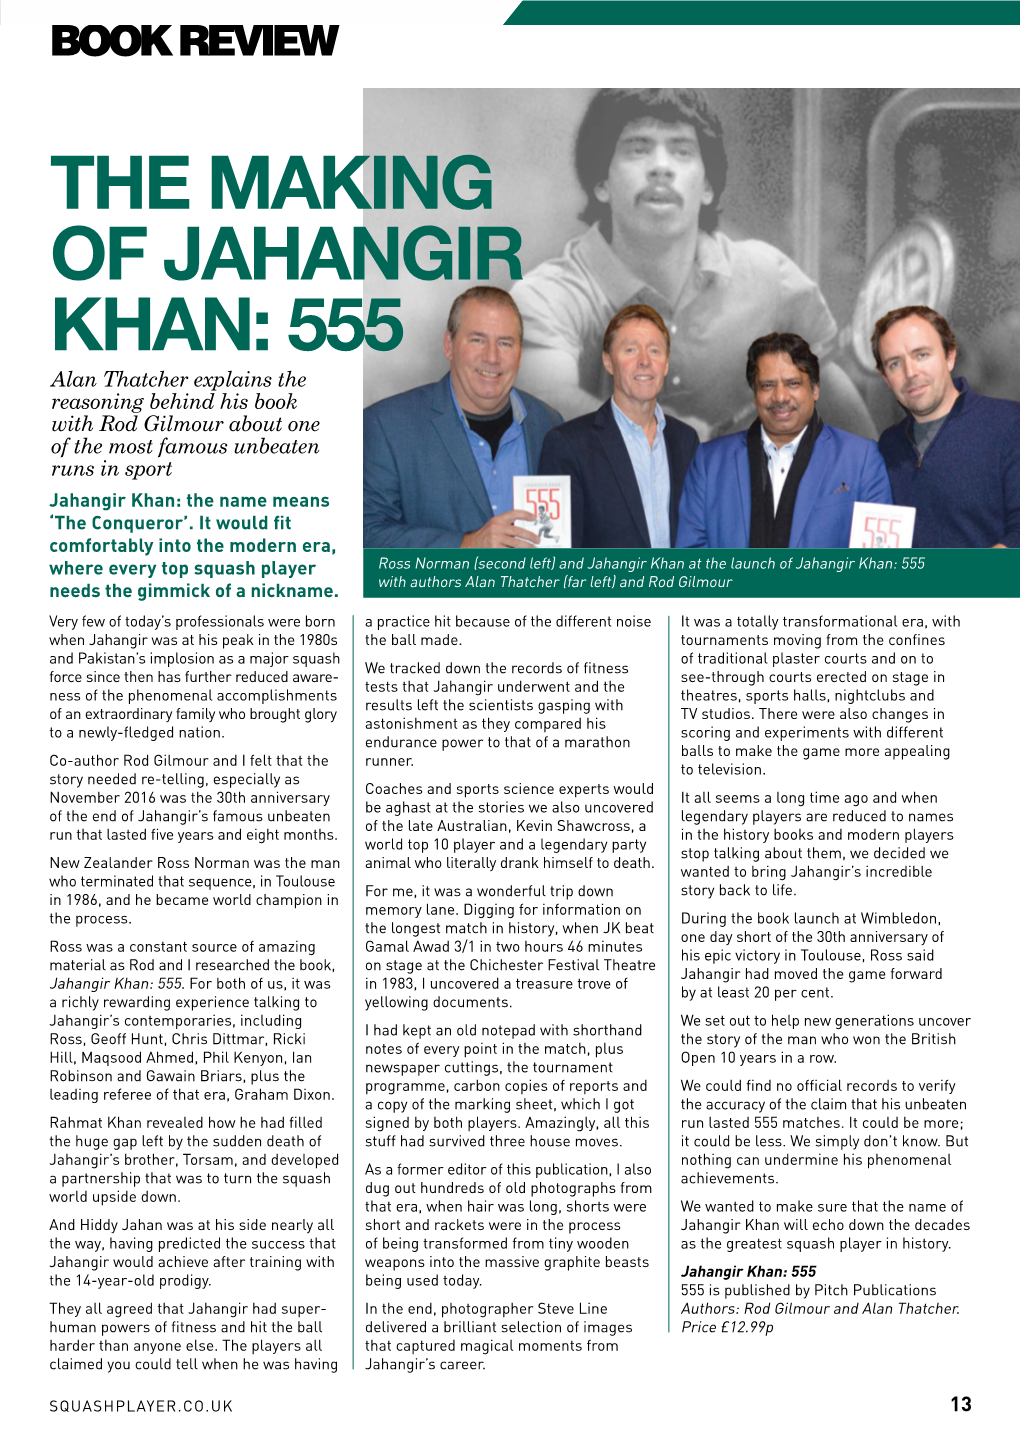 The Making of Jahangir Khan